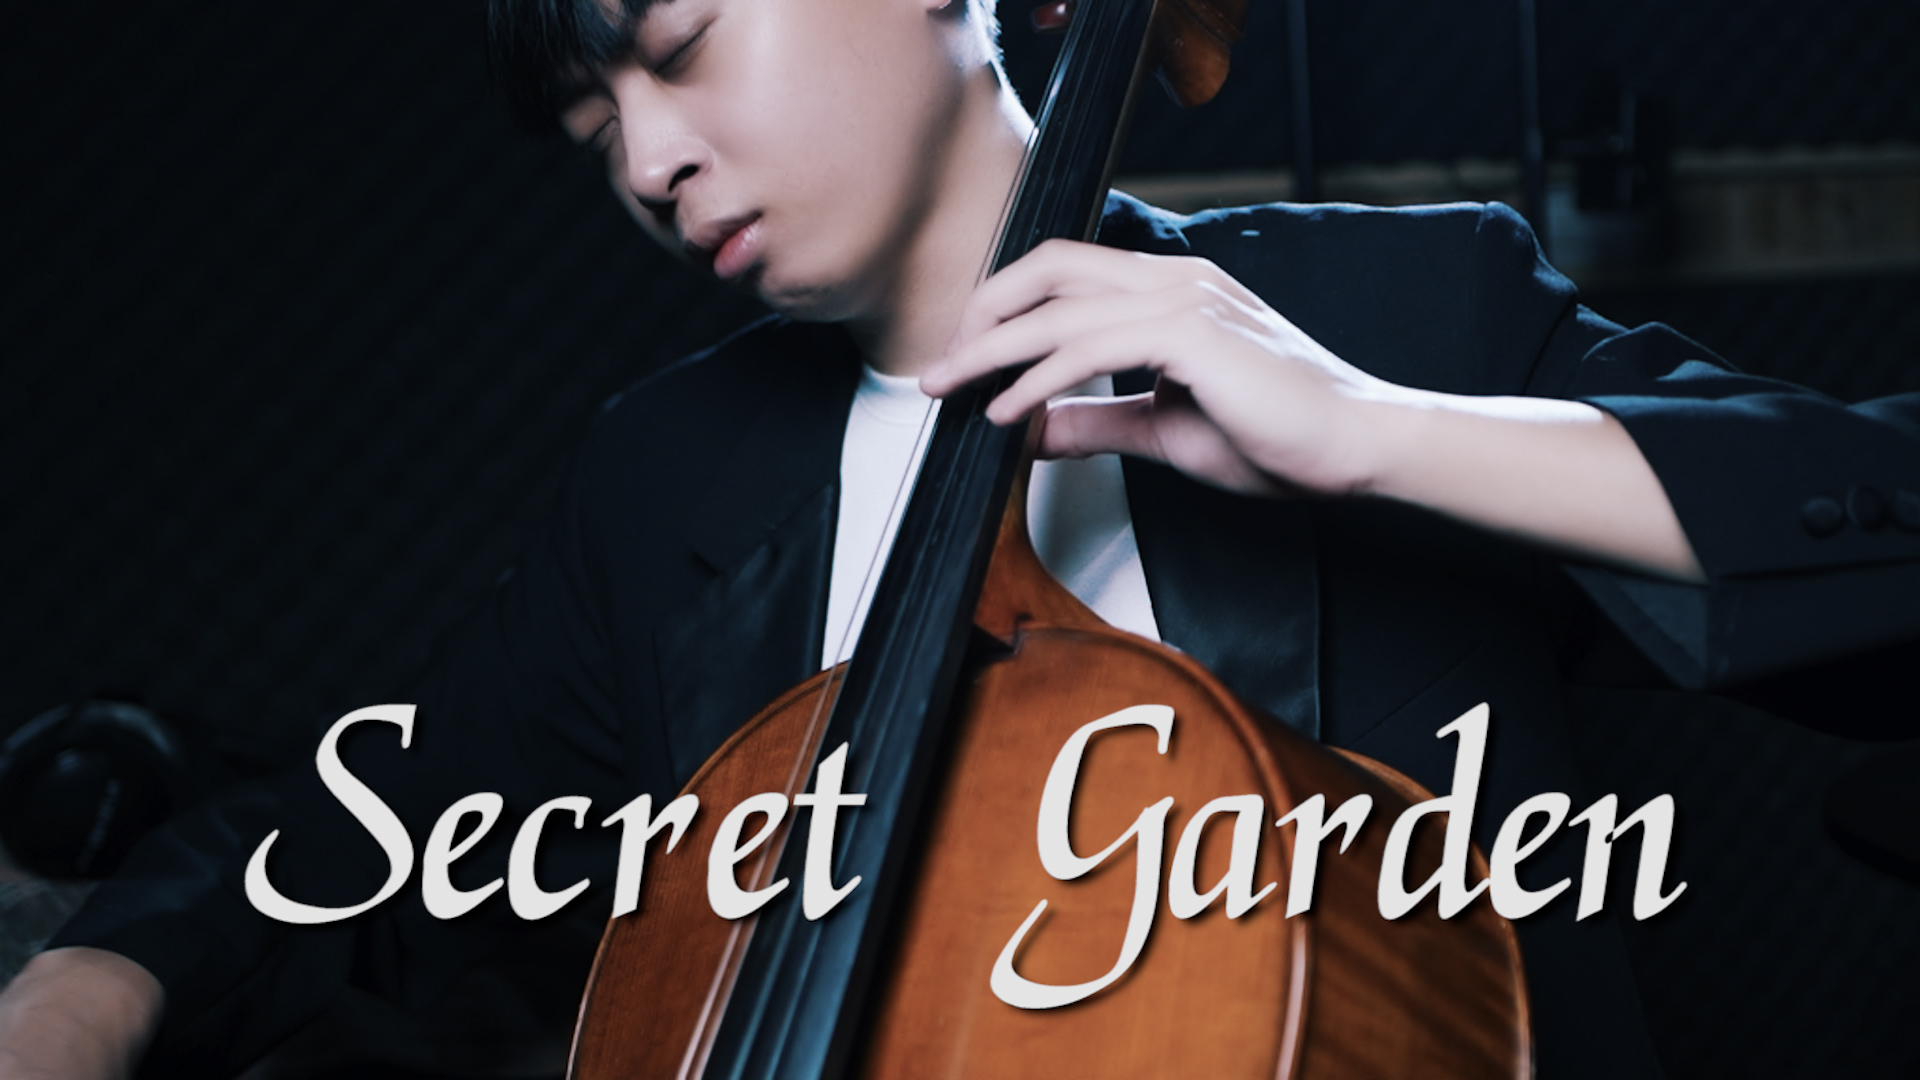  Song from a Secret Garden 《秘密花園》 大提琴演奏 Cello cover 『cover by YoYo Cello』